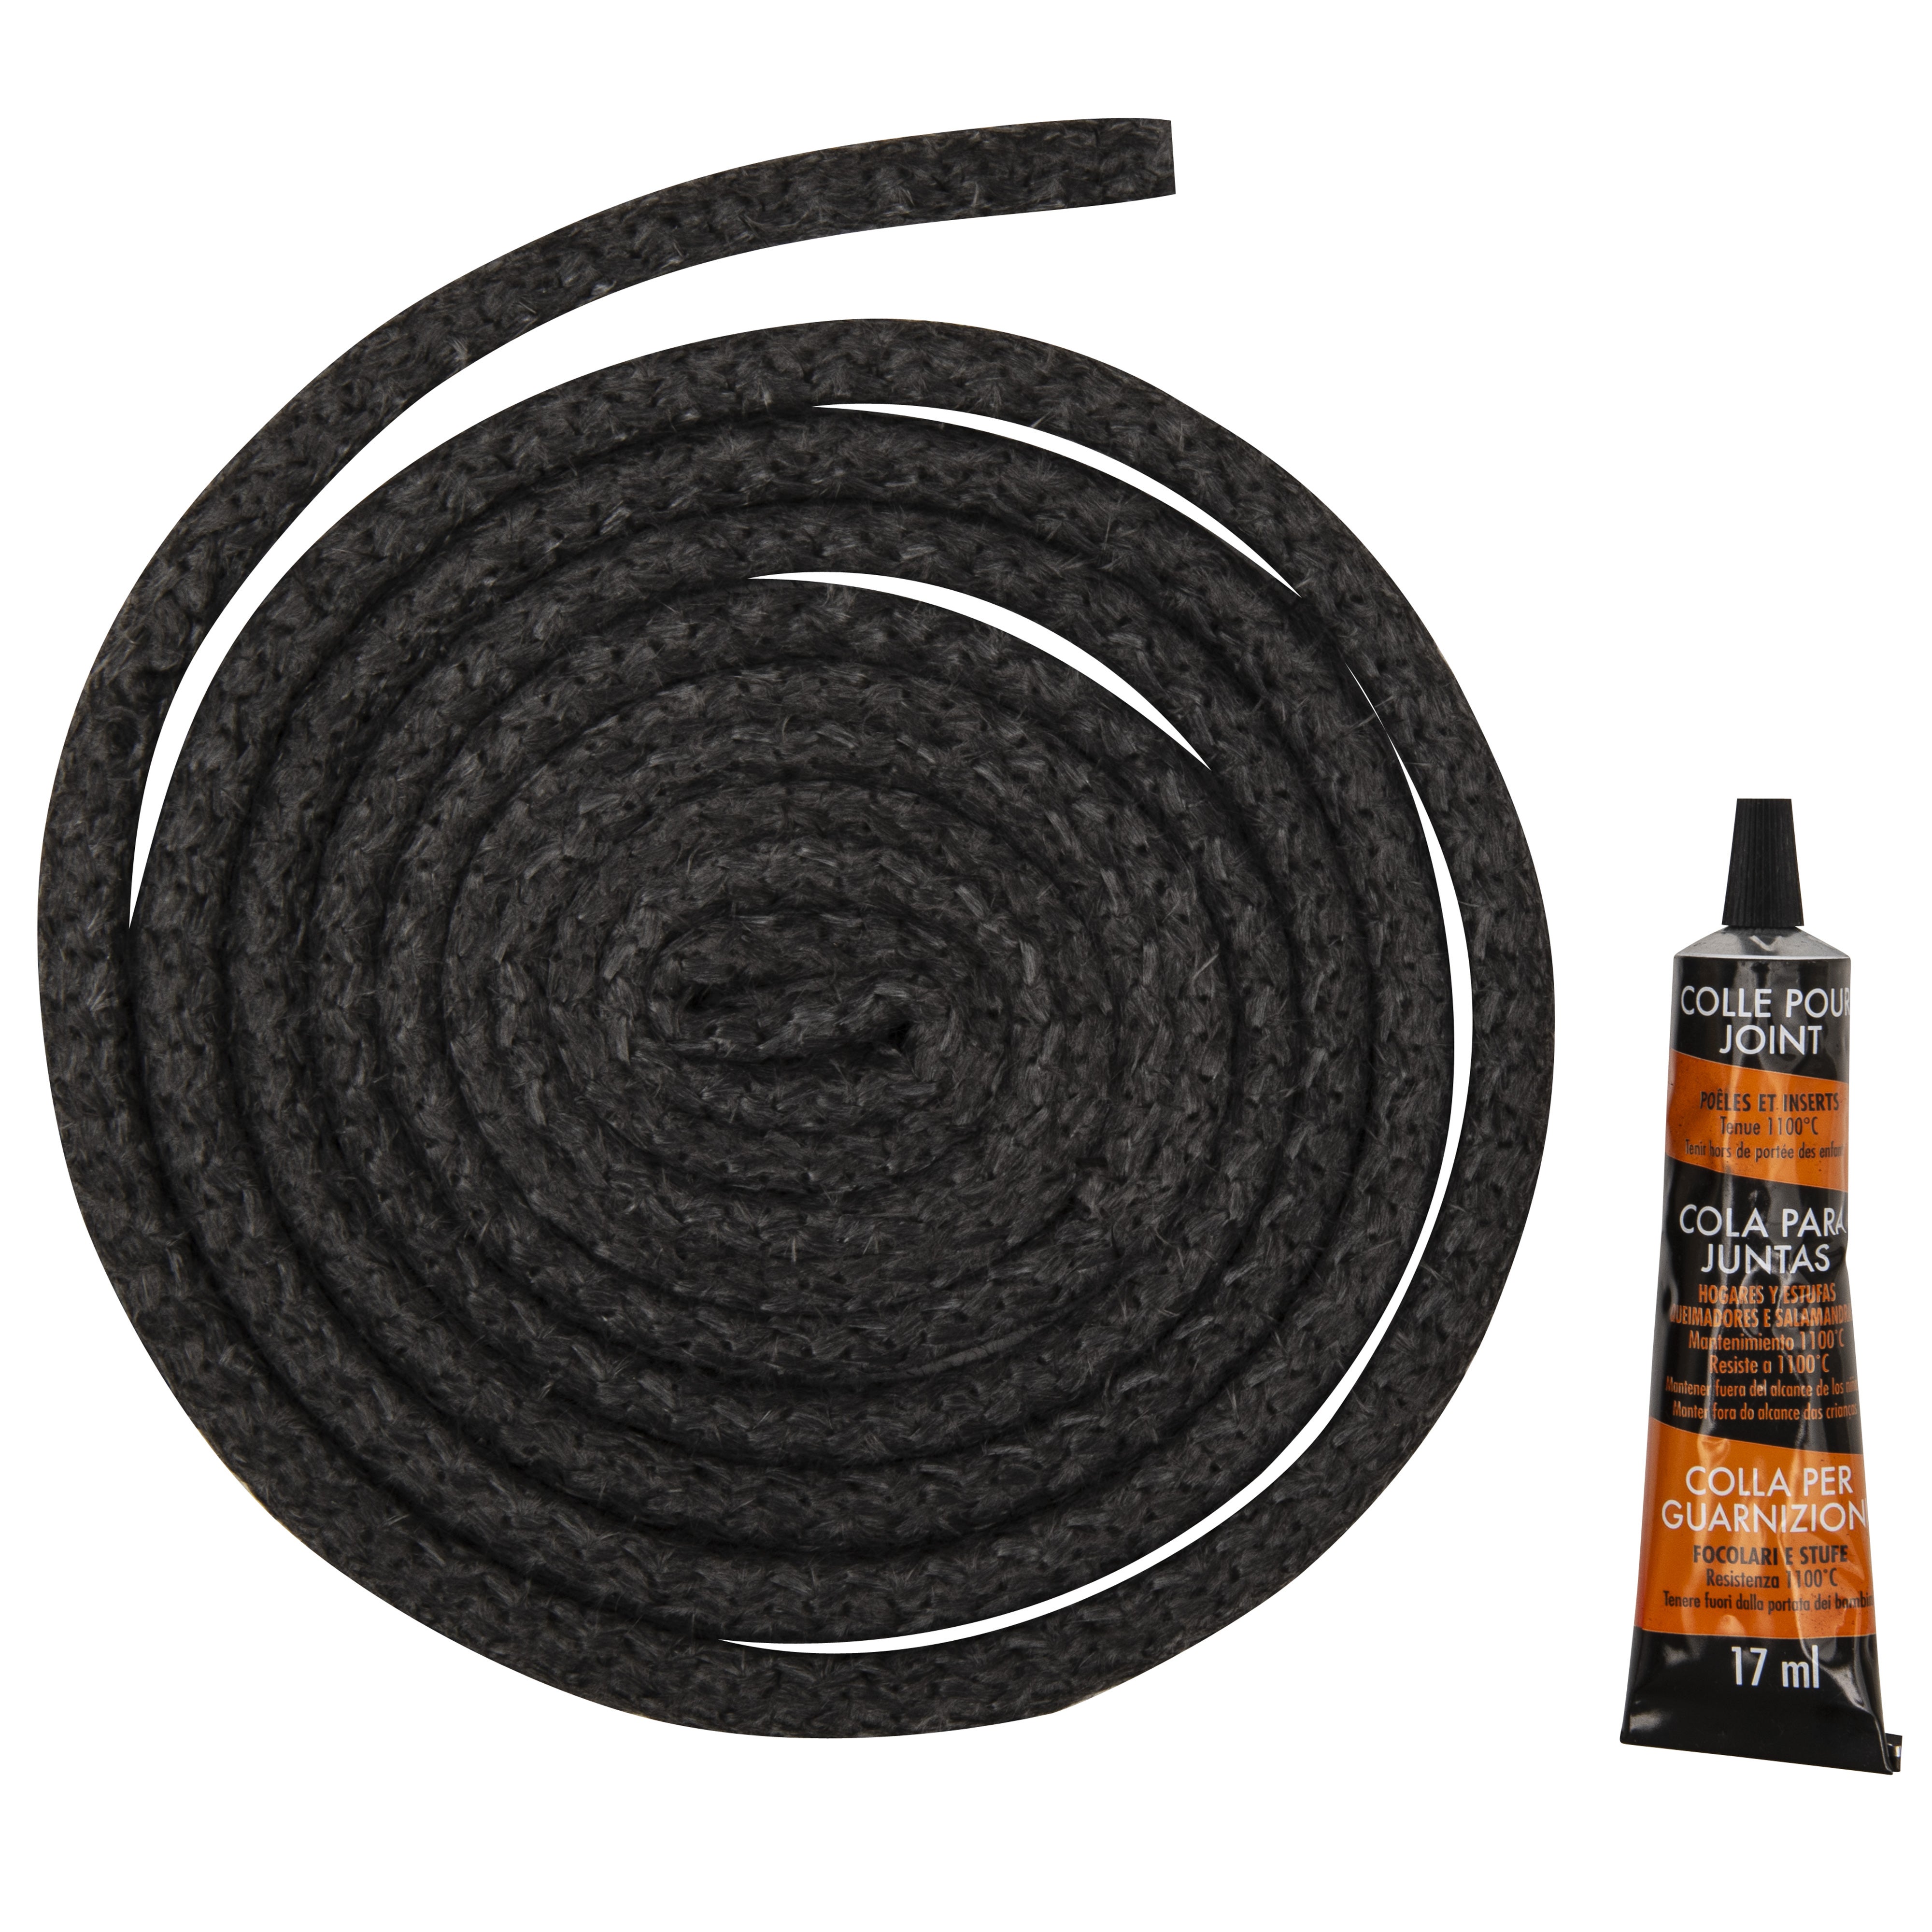 Promo Joint tresse noir rond ou plat pour insert de cheminée ou poêle chez  Provence Outillage